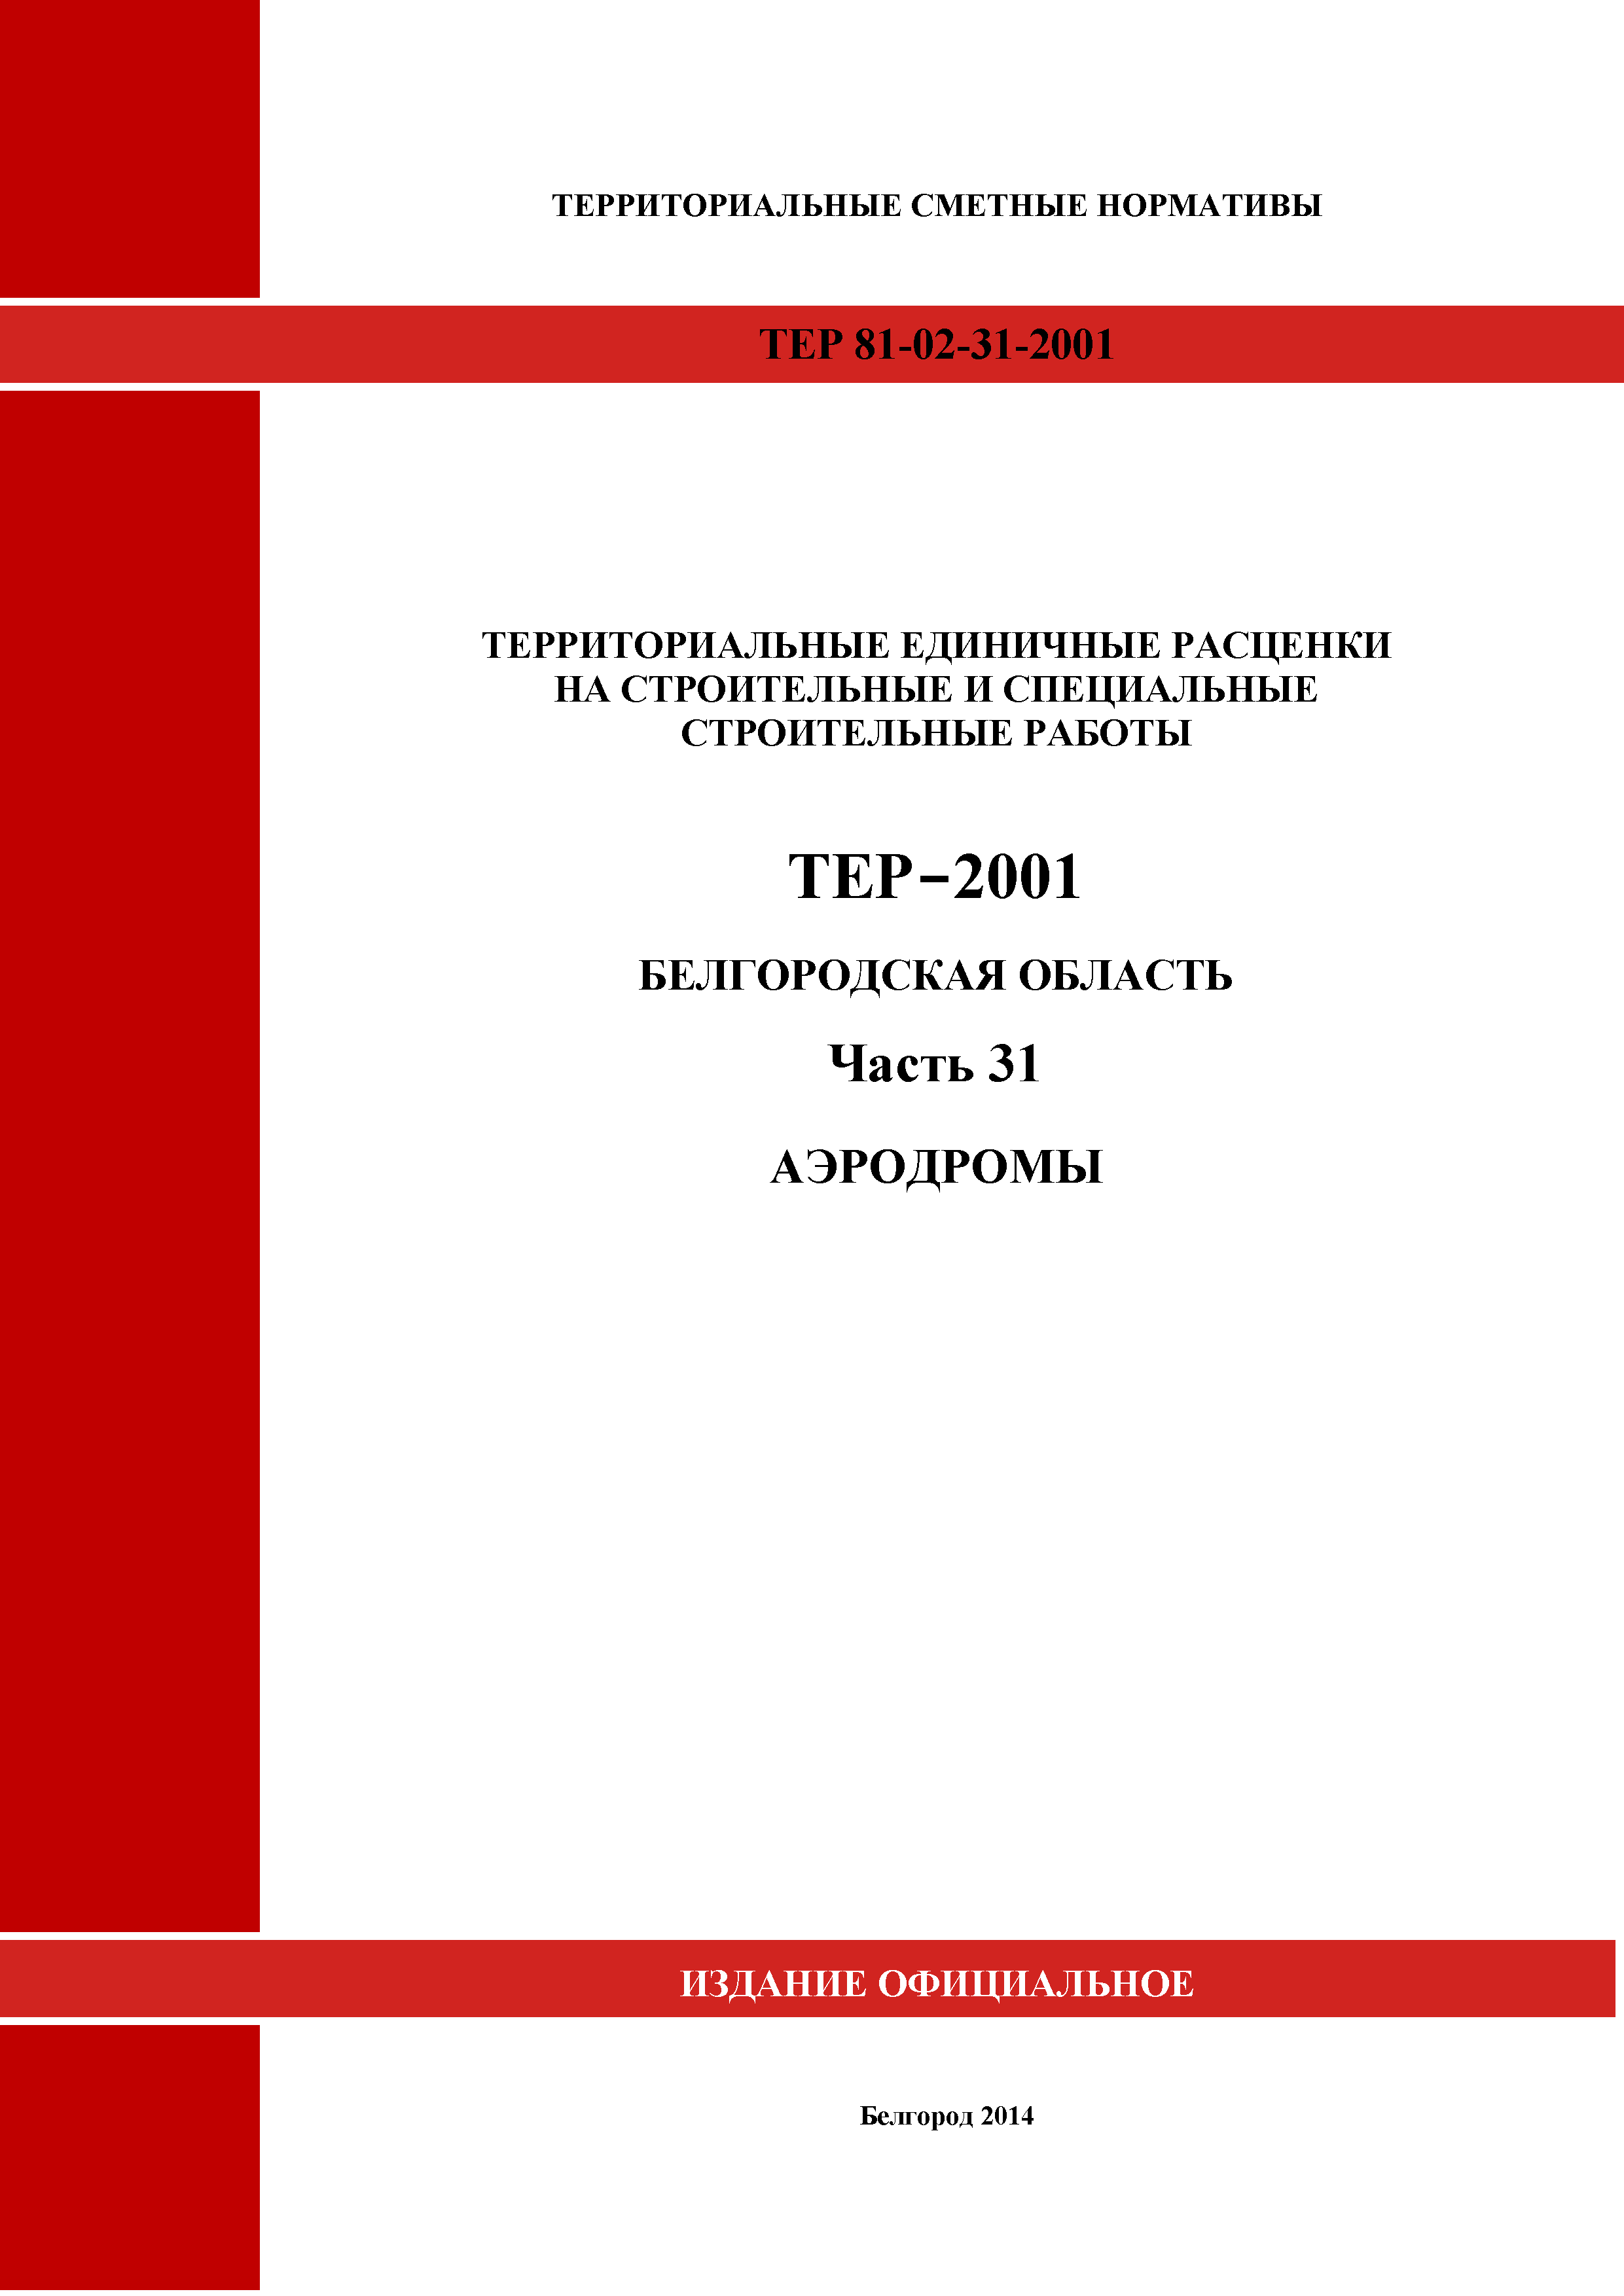 ТЕР Белгородская область 81-02-31-2001